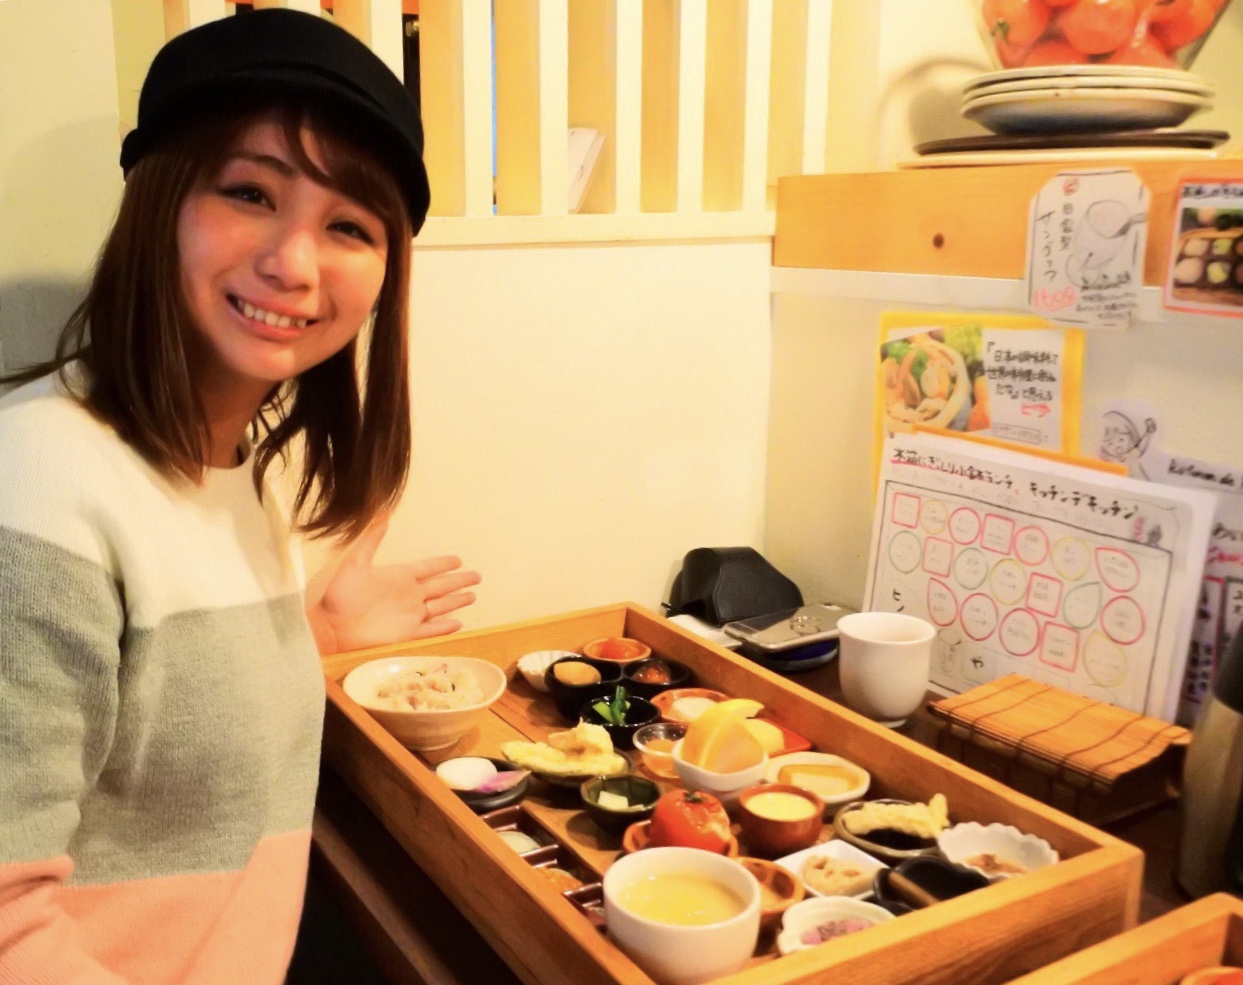 神戸三宮のおすすめ和食ランチ 1日25食限定 木箱に入ったおしゃれな小鉢ランチが今人気 Playlife プレイライフ